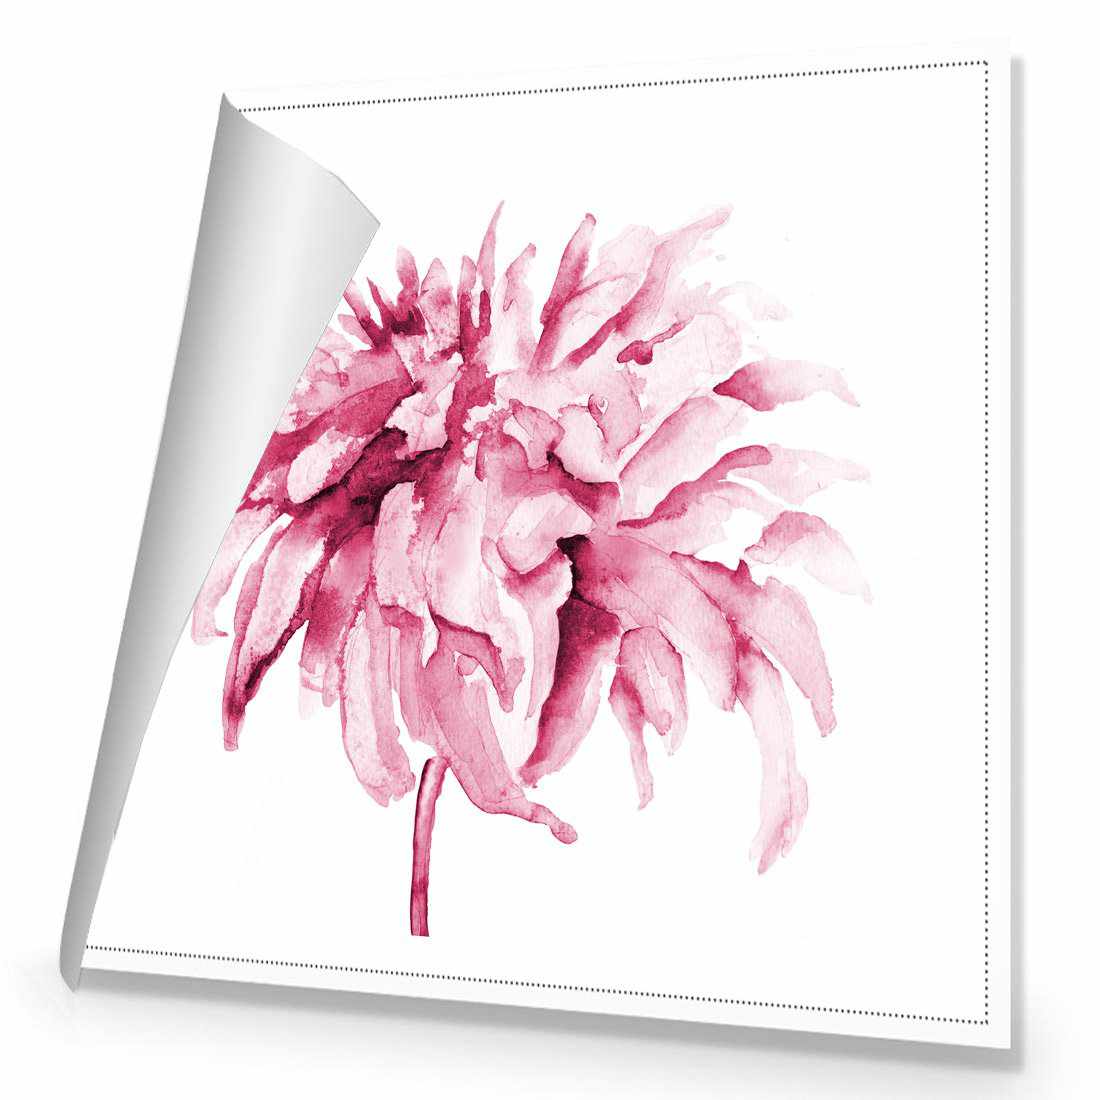 Fairy Floss, Pink Canvas Art-Canvas-Wall Art Designs-30x30cm-Rolled Canvas-Wall Art Designs